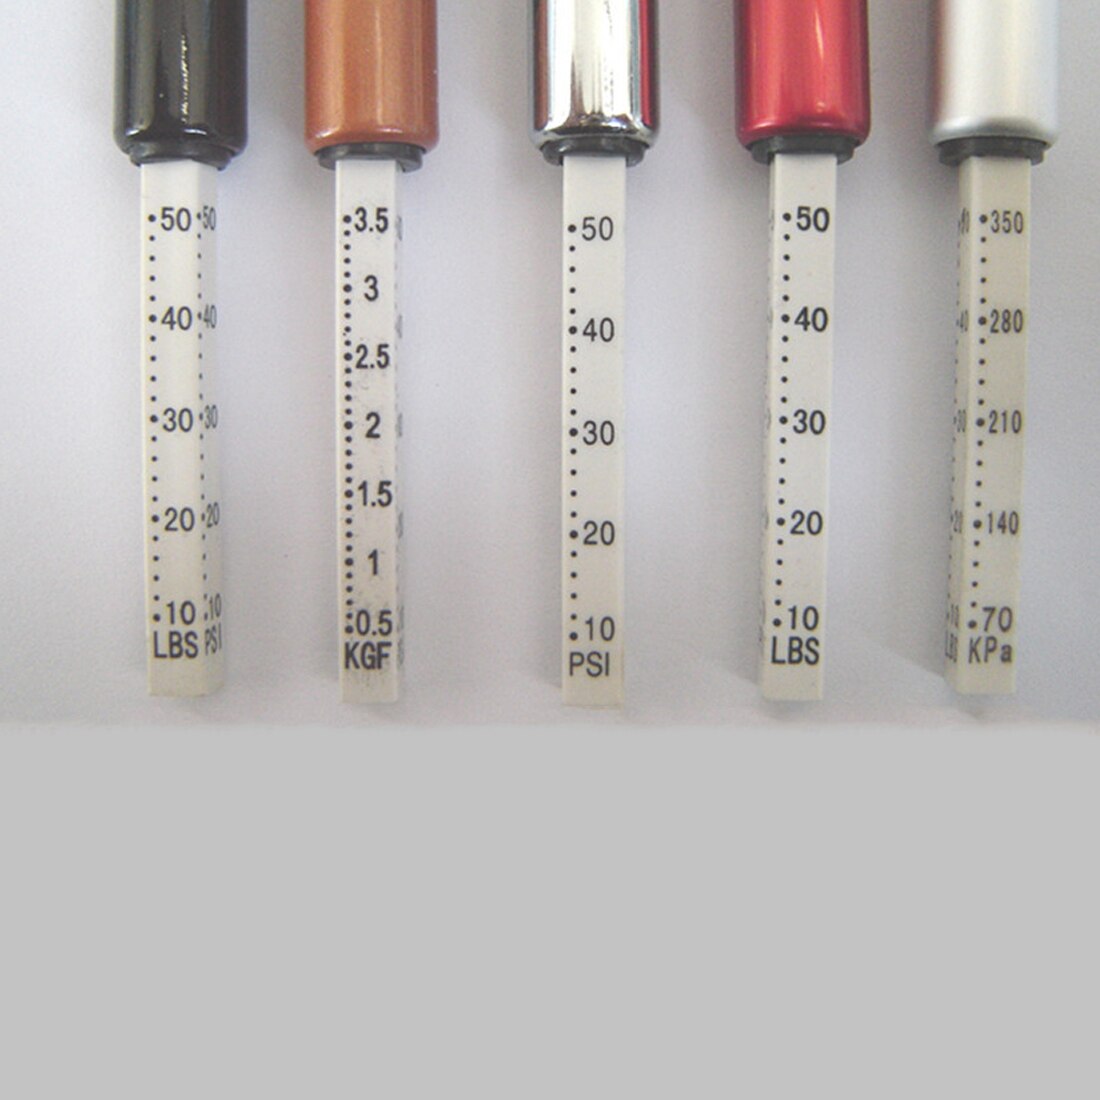 5-50 Psi Diagnostic Tool Draagbare Bandenspanning Test Gauge Pen Voertuig Auto Motorfiets Band Test Meter Pen zilverachtige